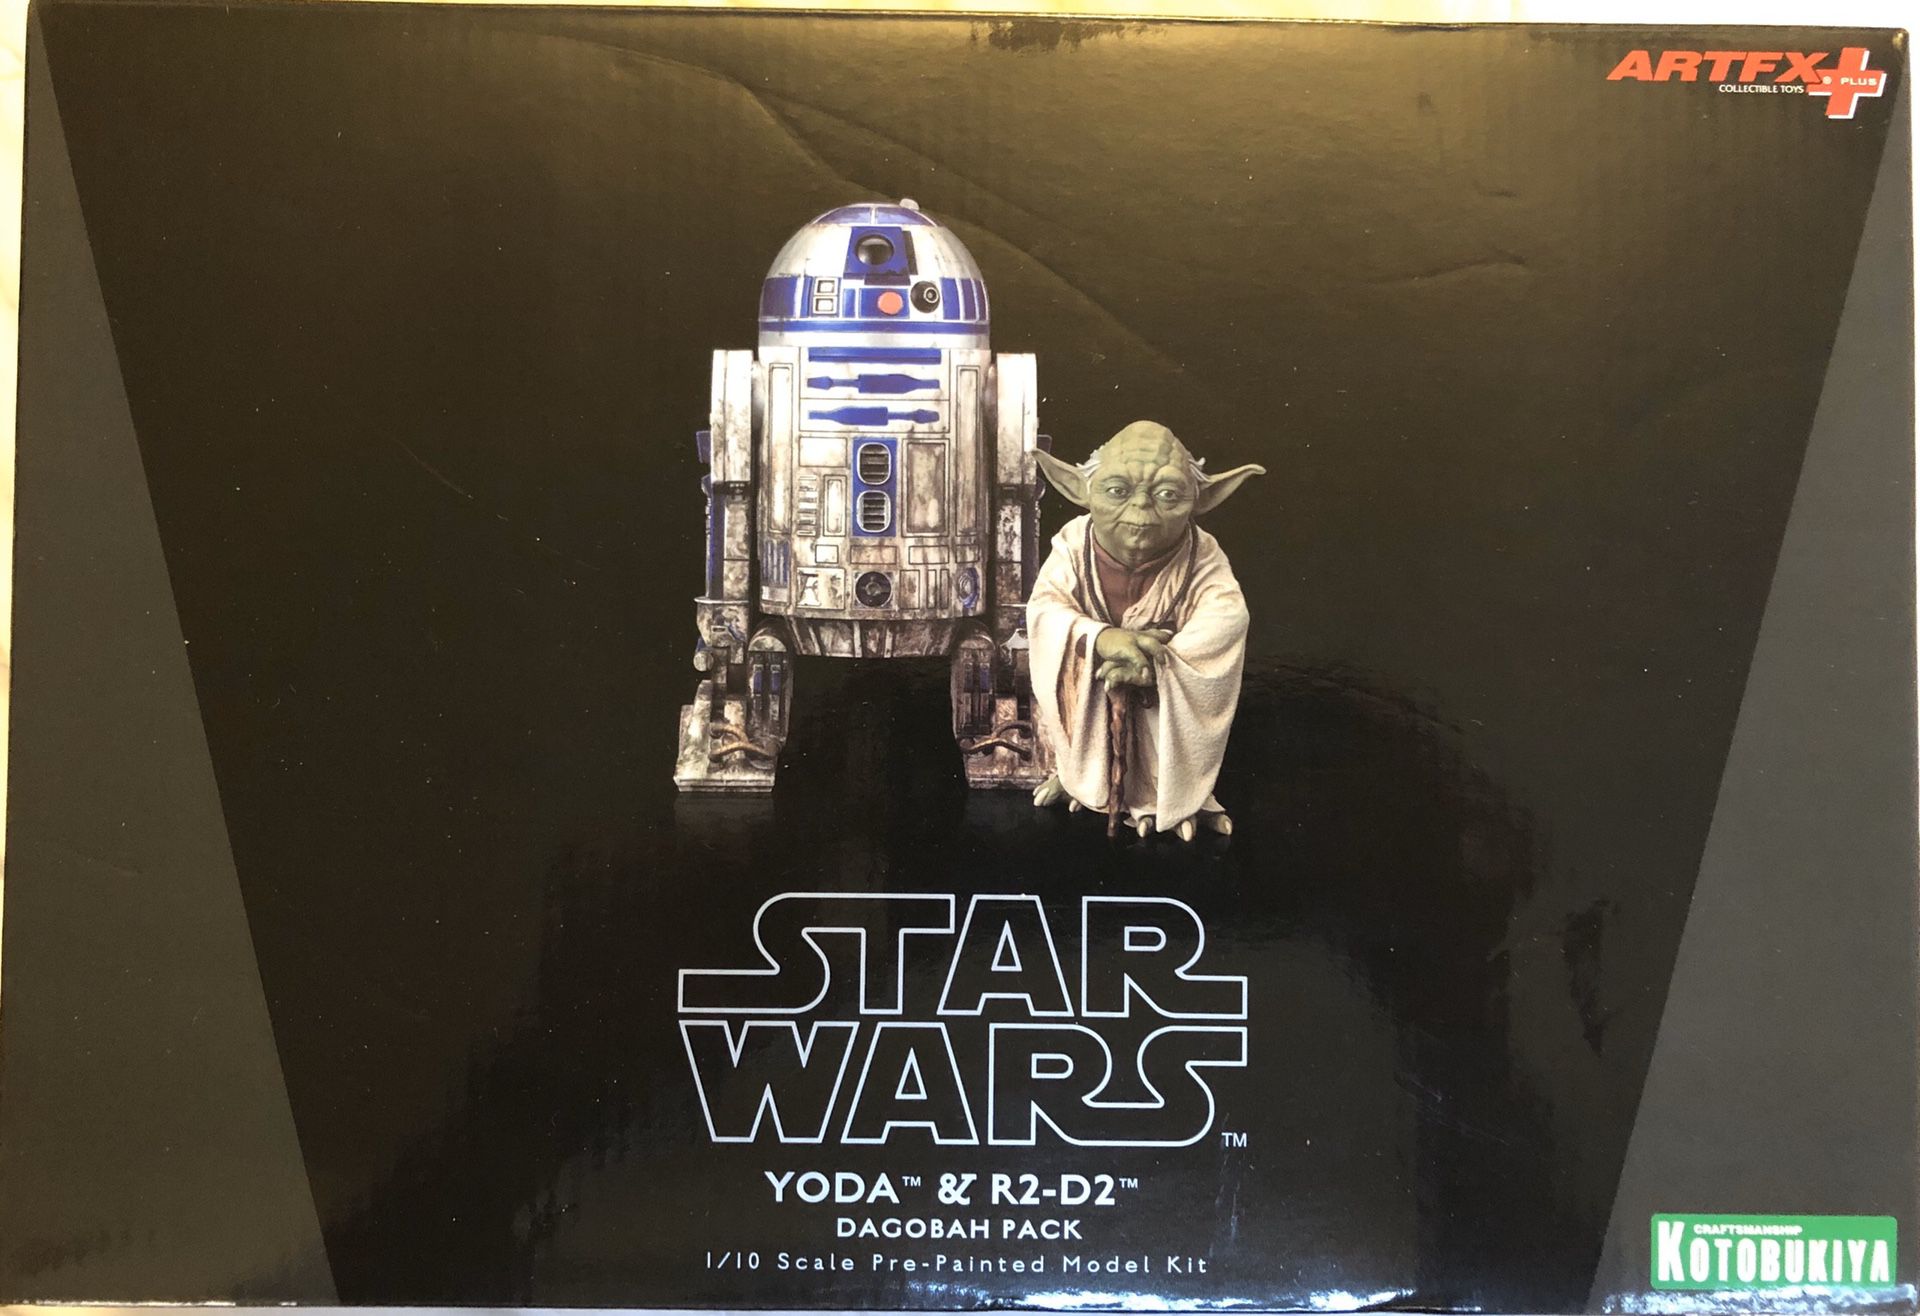 Kotobukiya Star Wars Yoda & R2-D2 Dagobah Pack Model Kit